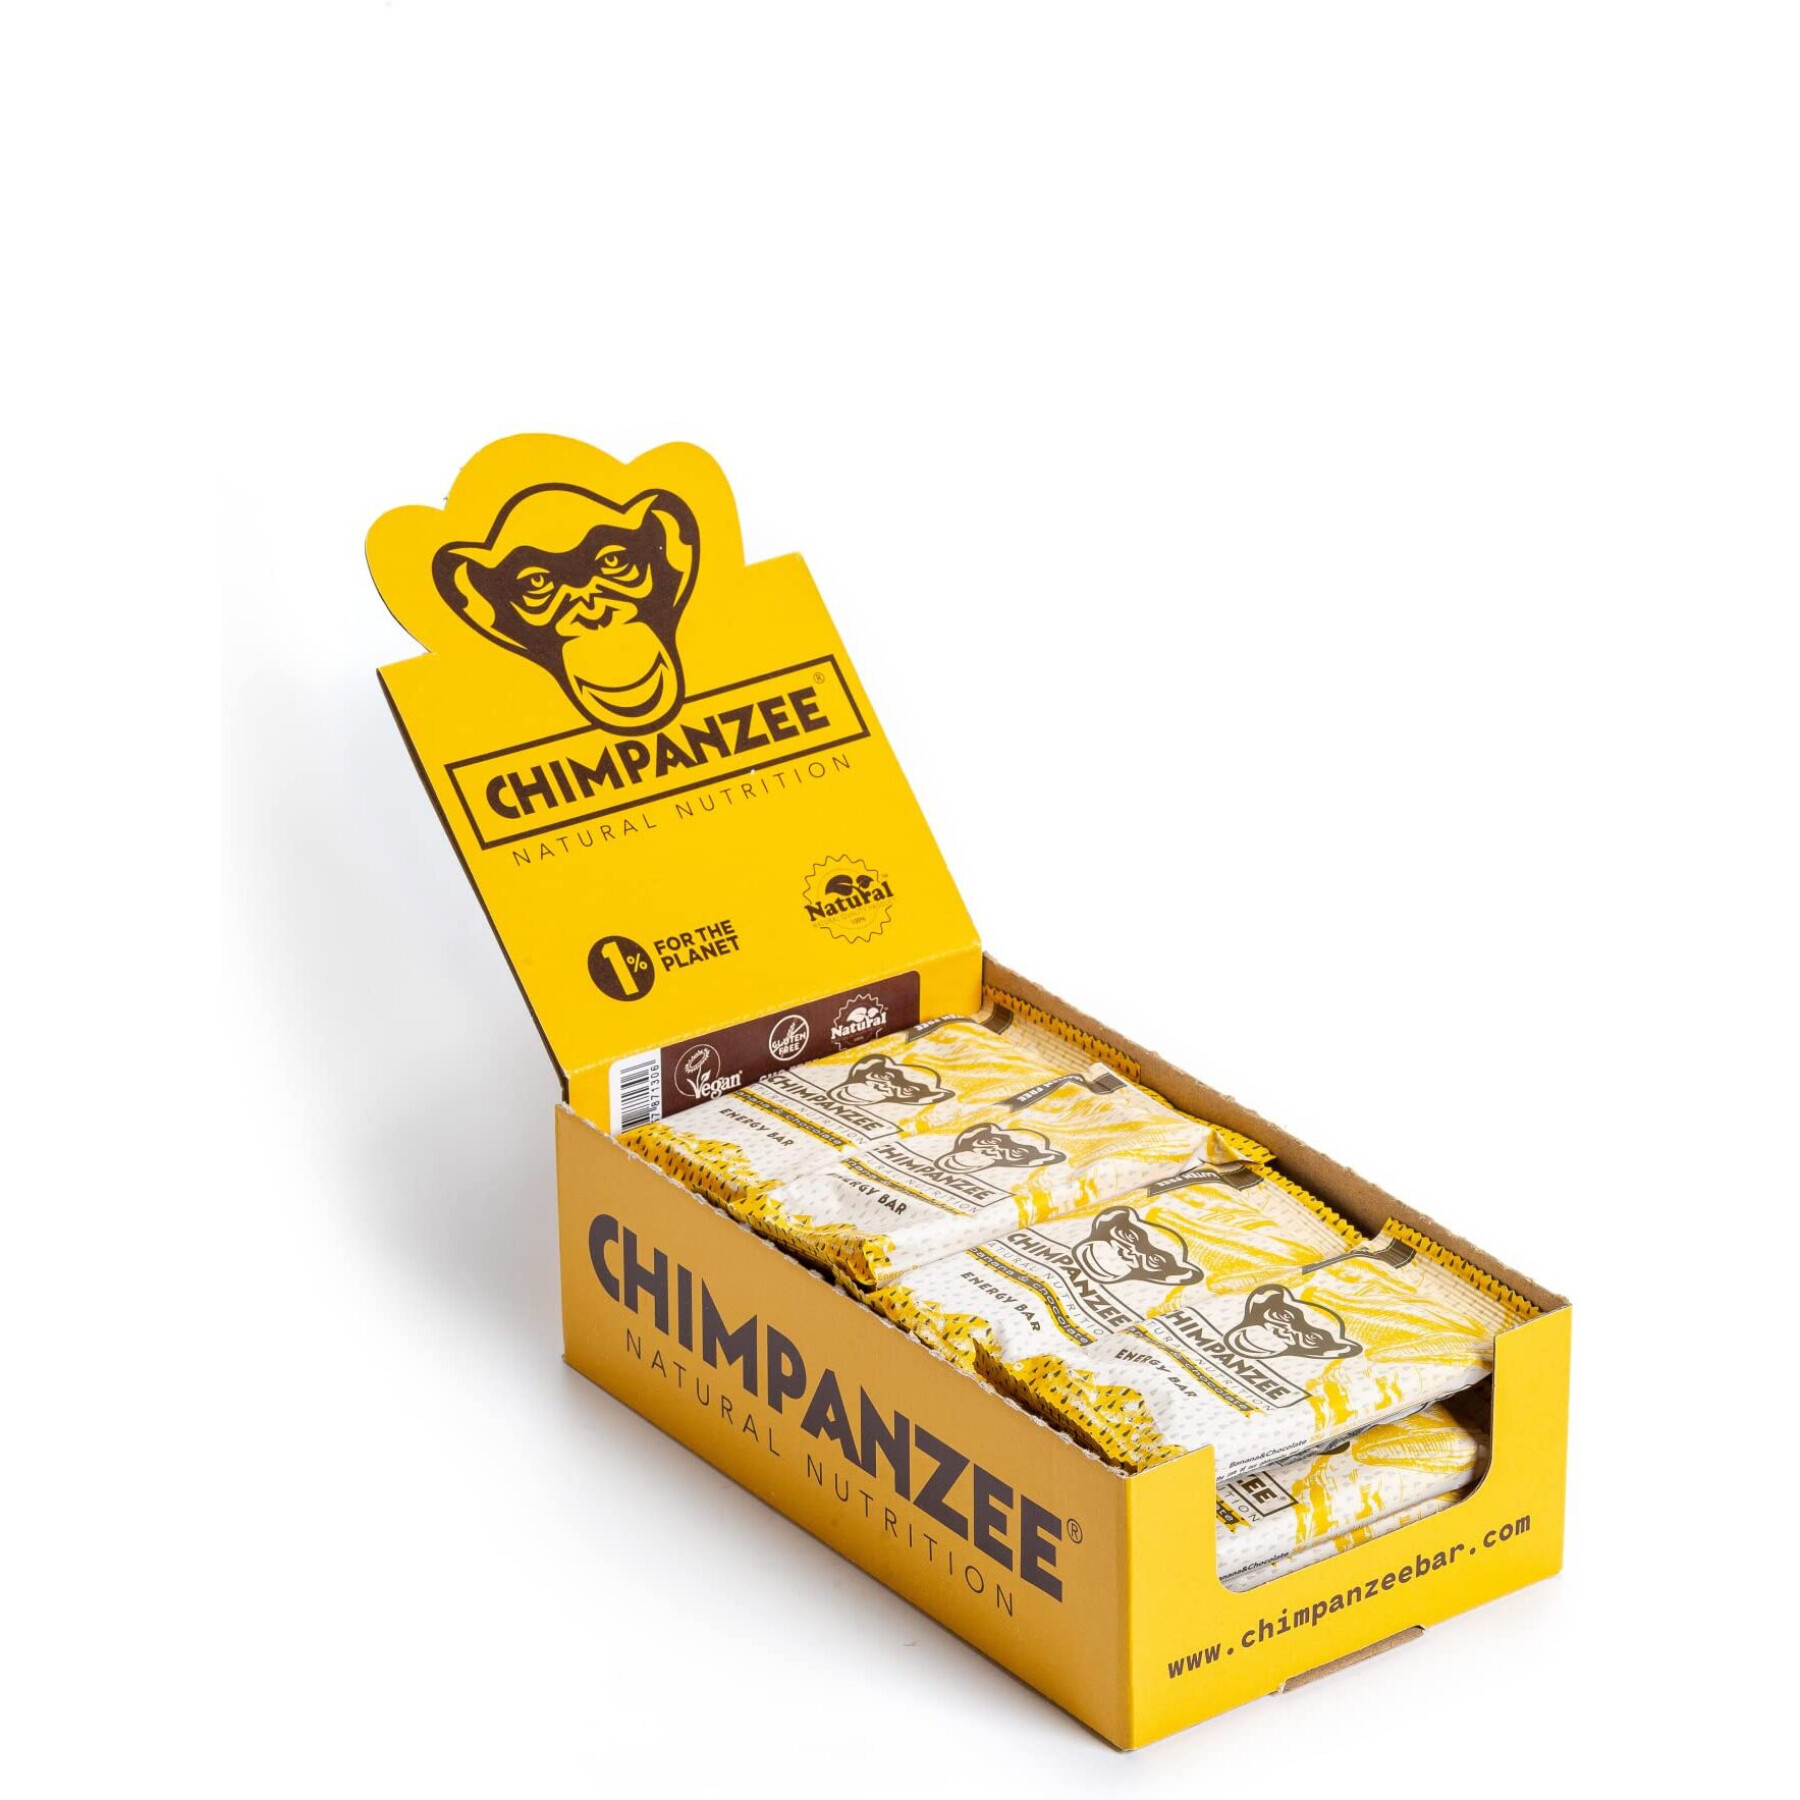 Energibar Chimpanzee vegan (x20) : banane/chocolat 55g